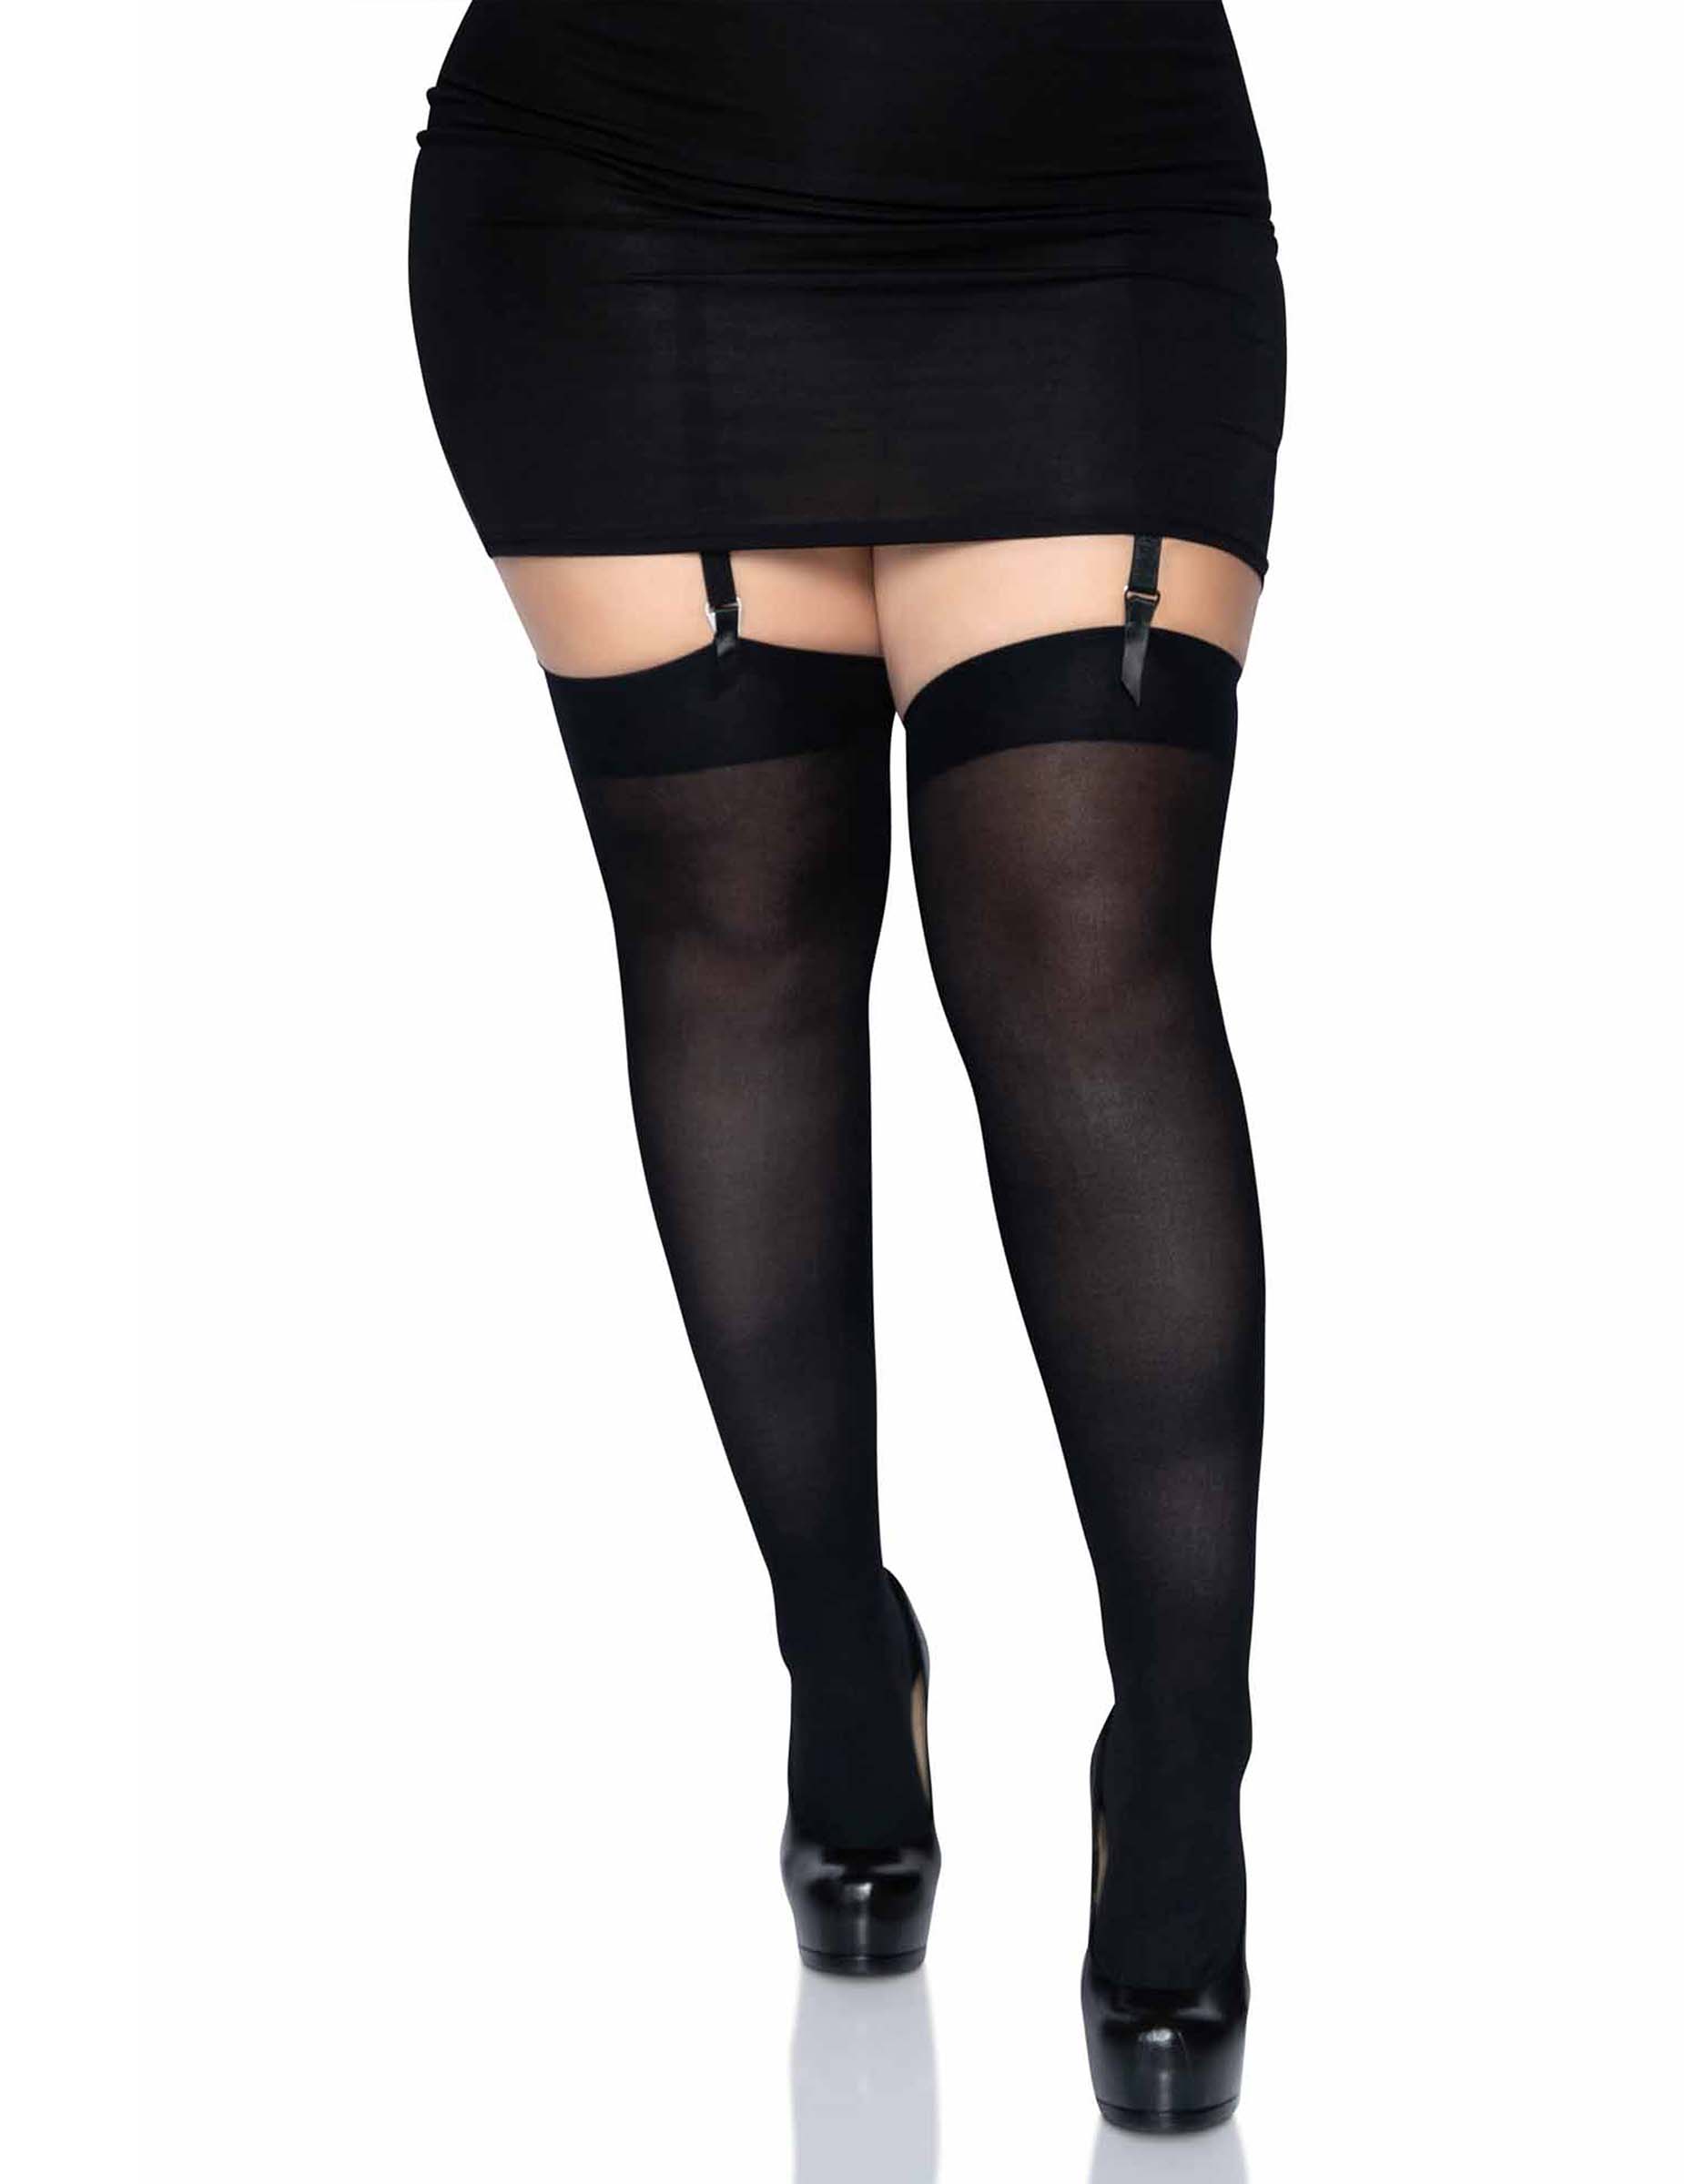 Strumpfhosen Plus Size für Damen schwarz von LEG-AVENUE